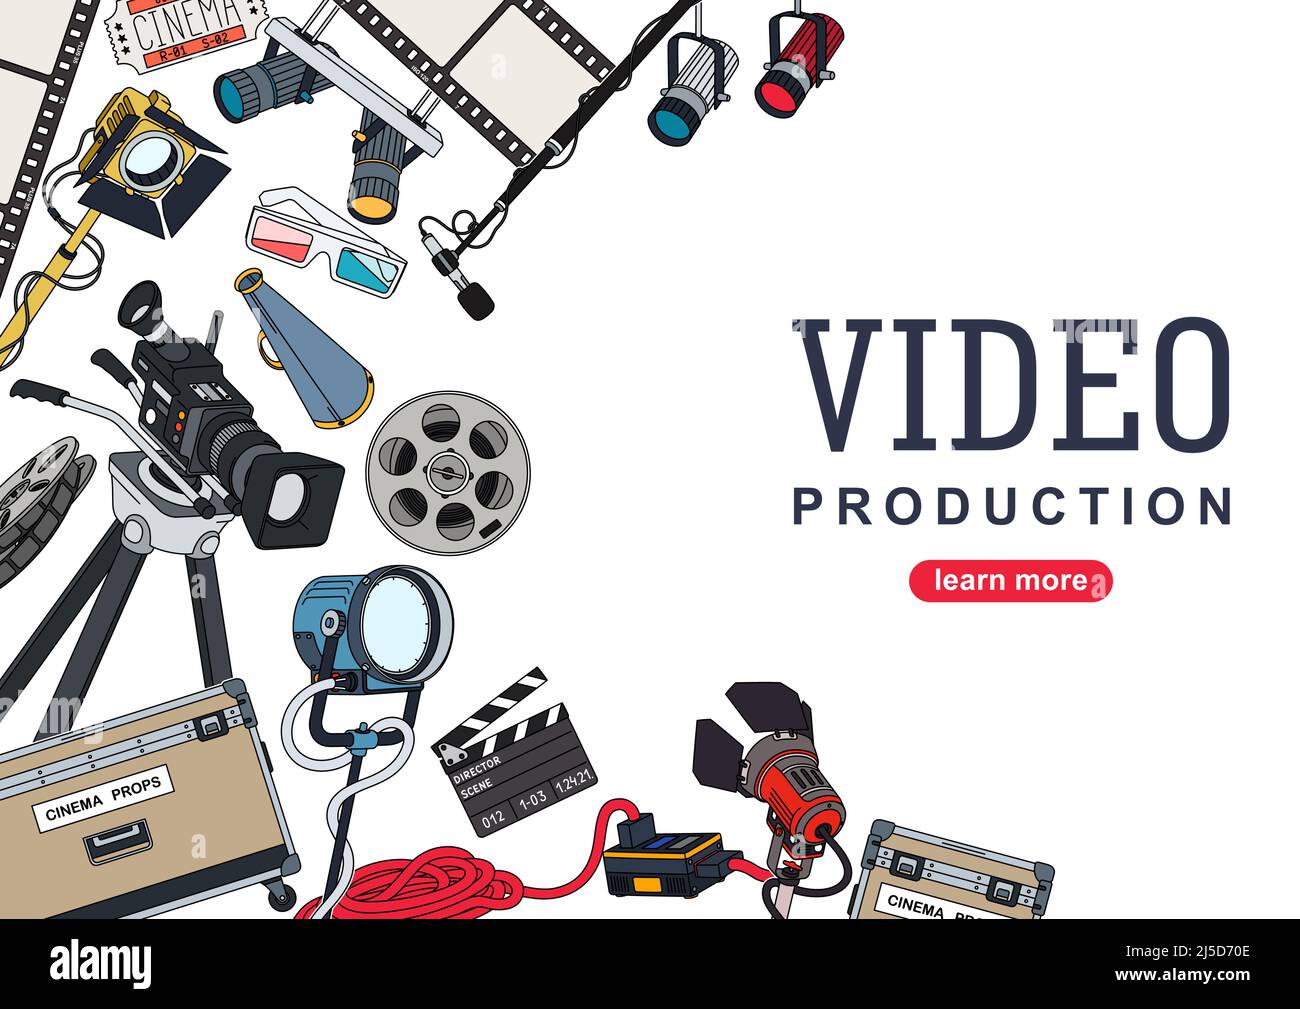 Videoproduktion. Hintergrunddesign mit einer Reihe von Geräten und Werkzeugen für die Filmproduktion und die Erstellung von Videoinhalten. Vektorgrafik Stock Vektor